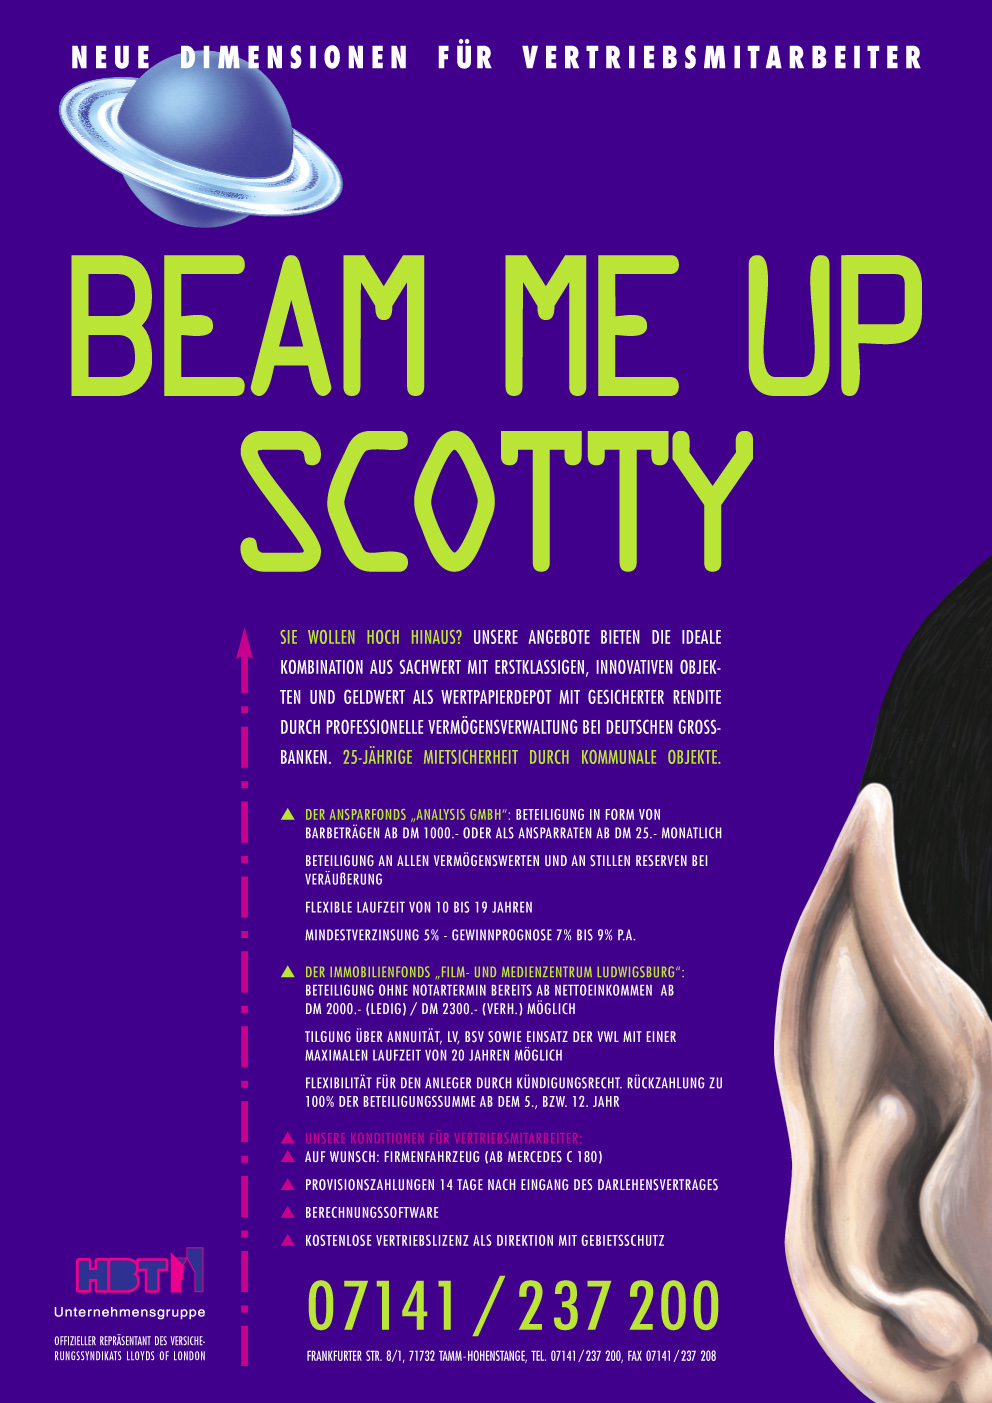 Abbildung Anzeige, Slogan: Beam me up Scotty